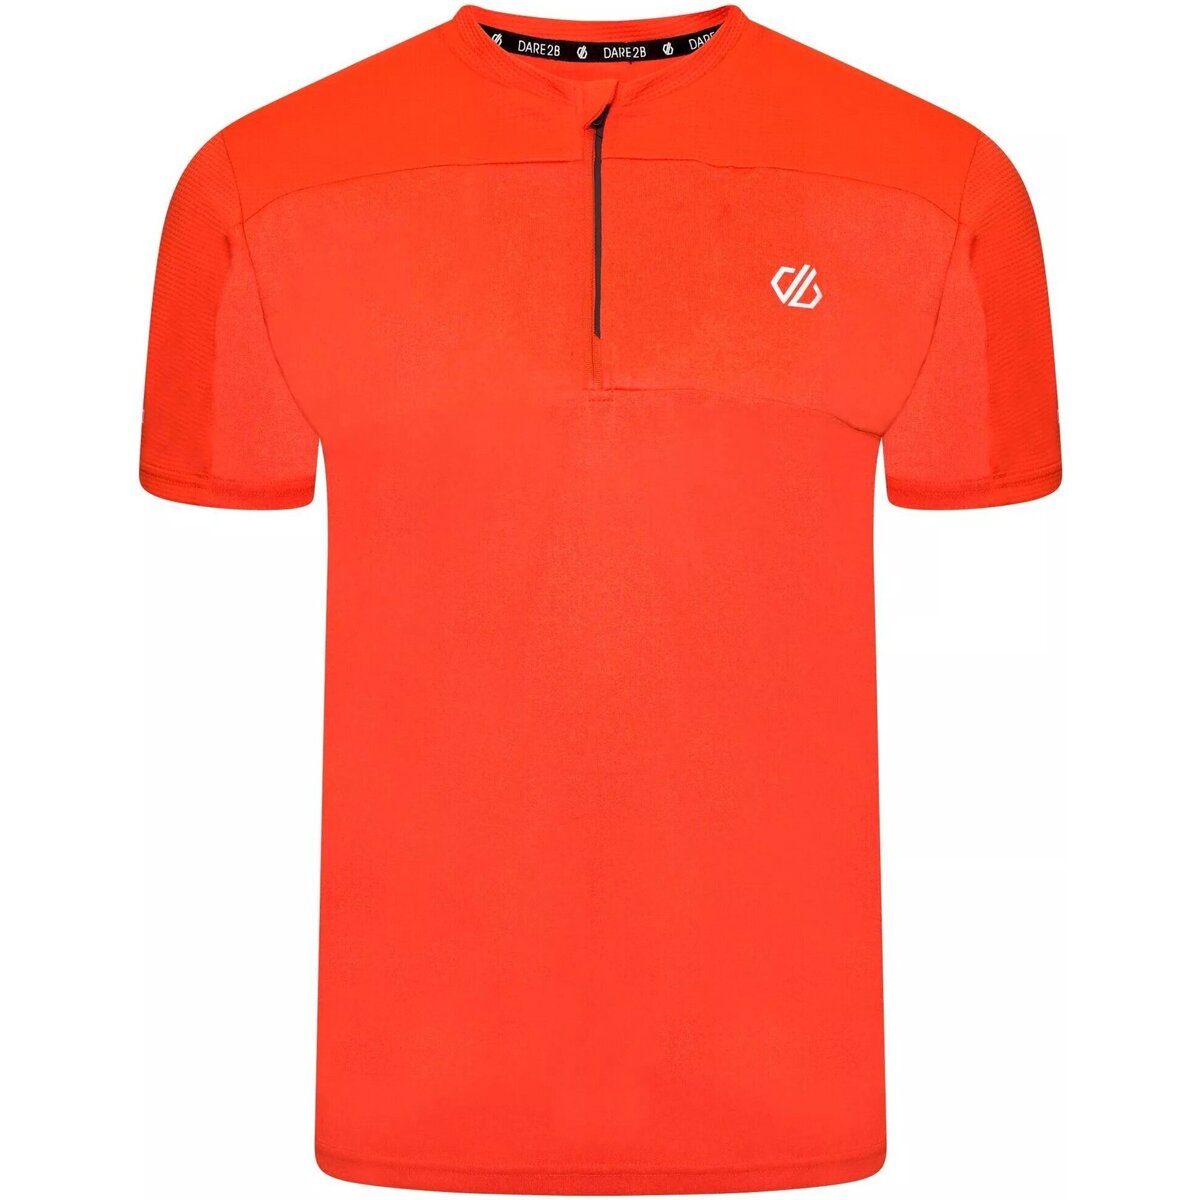 Vêtements Homme T-shirts manches courtes Dare 2b Aces III Orange